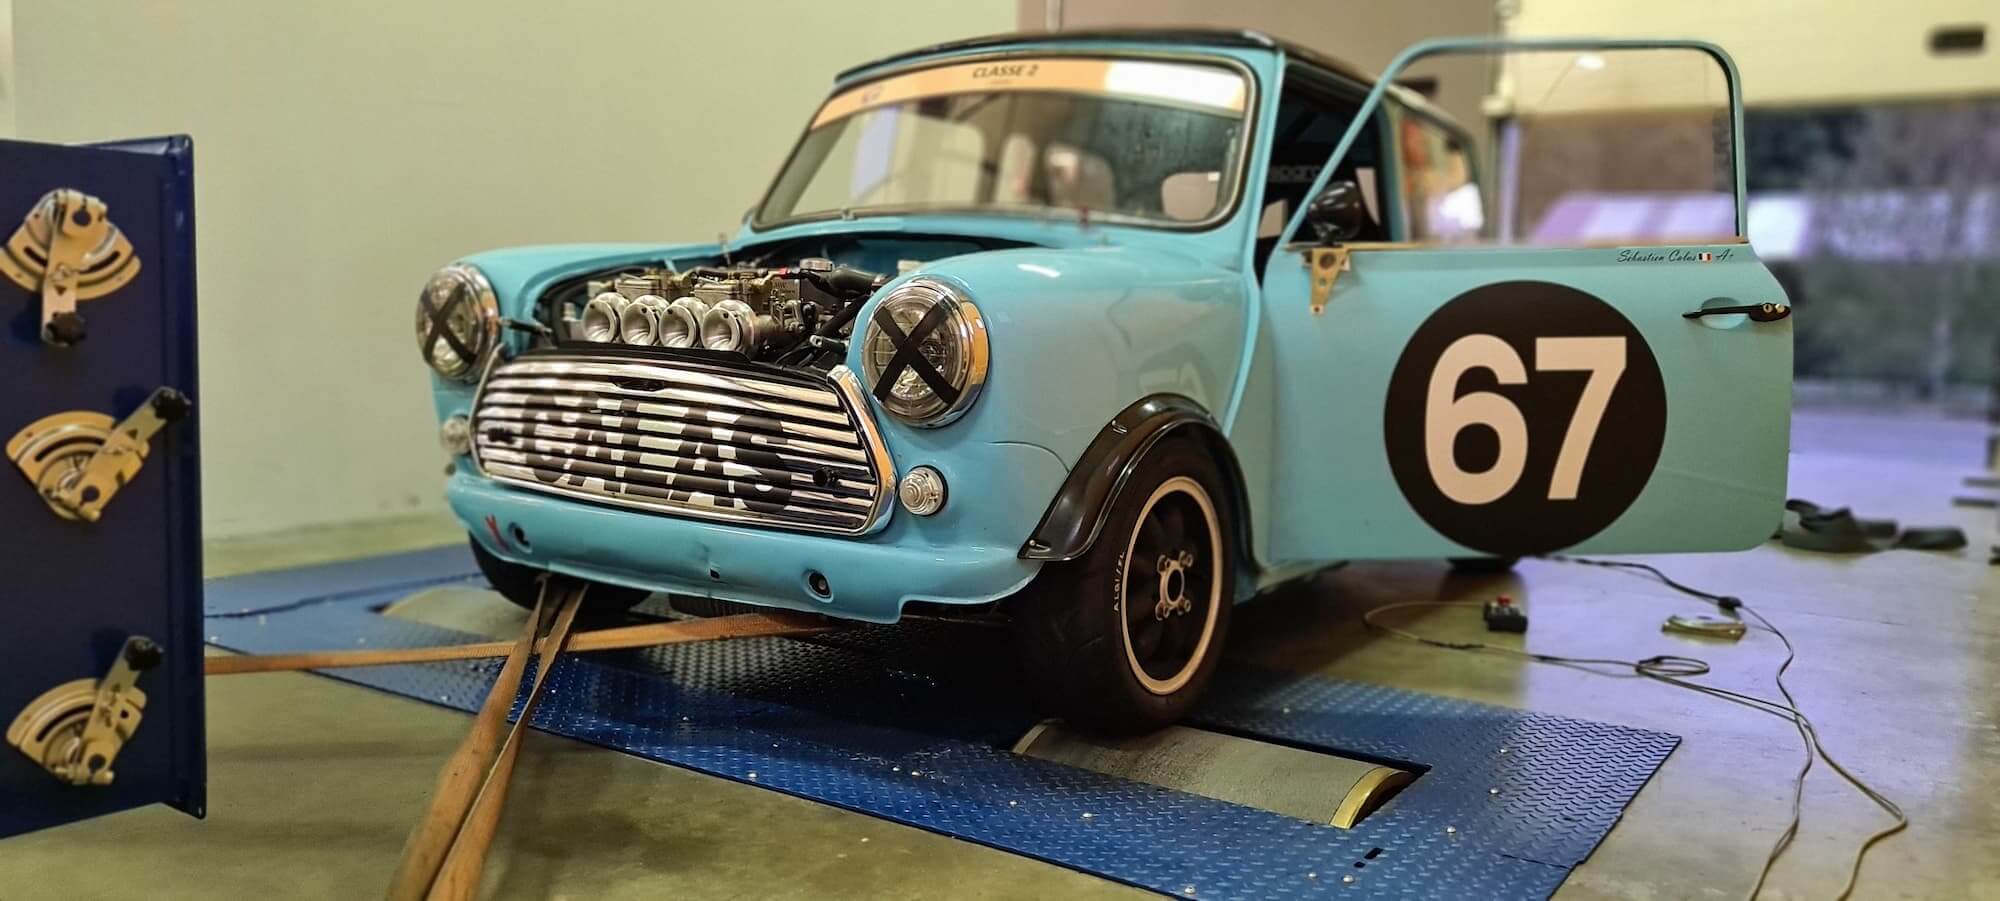 Garage des Damiers - Austin Mini - Mini Cooper - Banc de puissance - Rotronics - Maxi1300series - British Racing - Historic Racing - Classic Mini 1